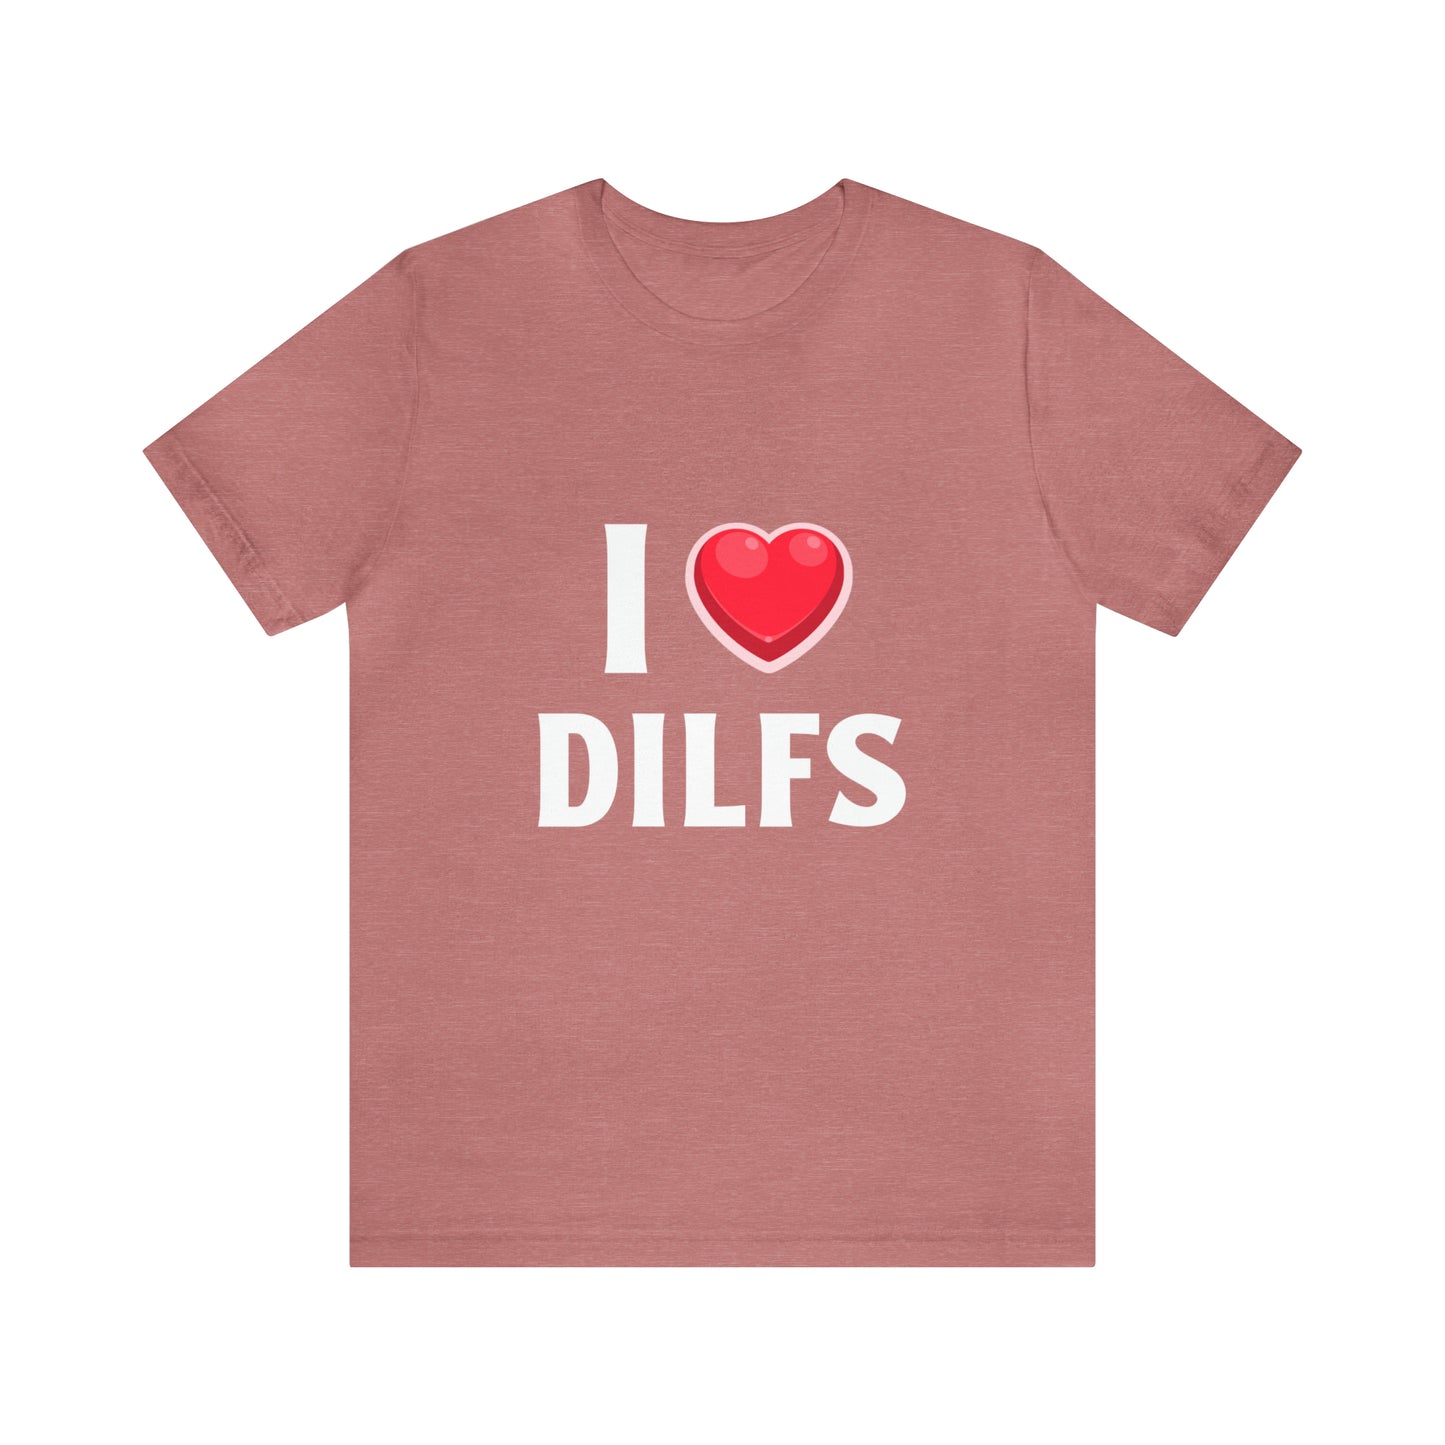 I Heart DILFs - Unisex T-Shirt